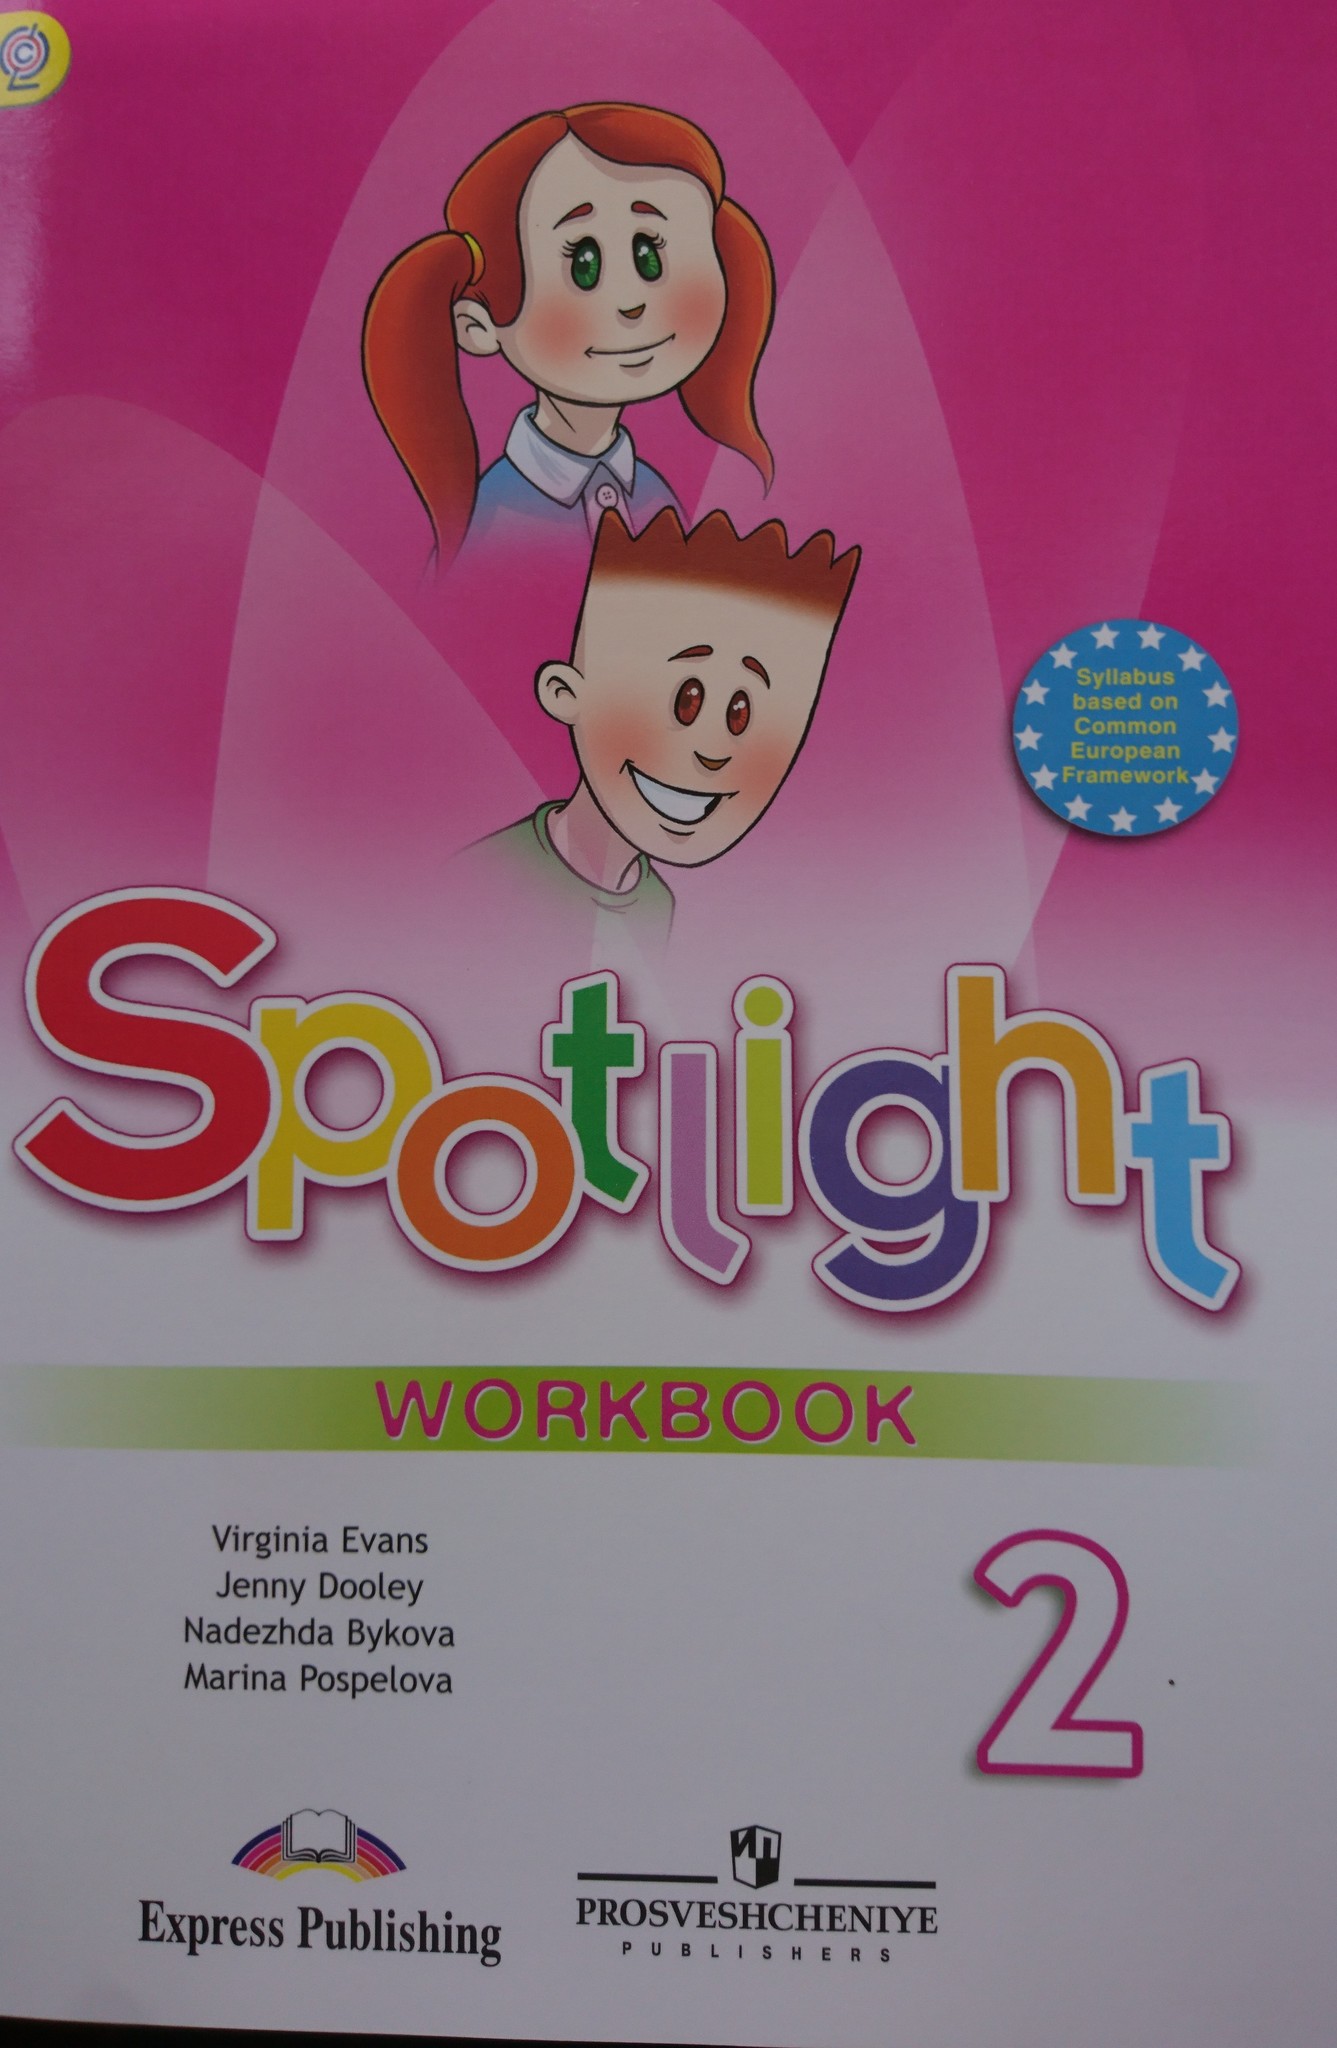 Спотлайт 2 новый. Спотлайт 2 Workbook. Workbook 2 класс Spotlight. Спотлайт 2 класс для учителя. Английский язык 2 класс Вирджиния Эванс.